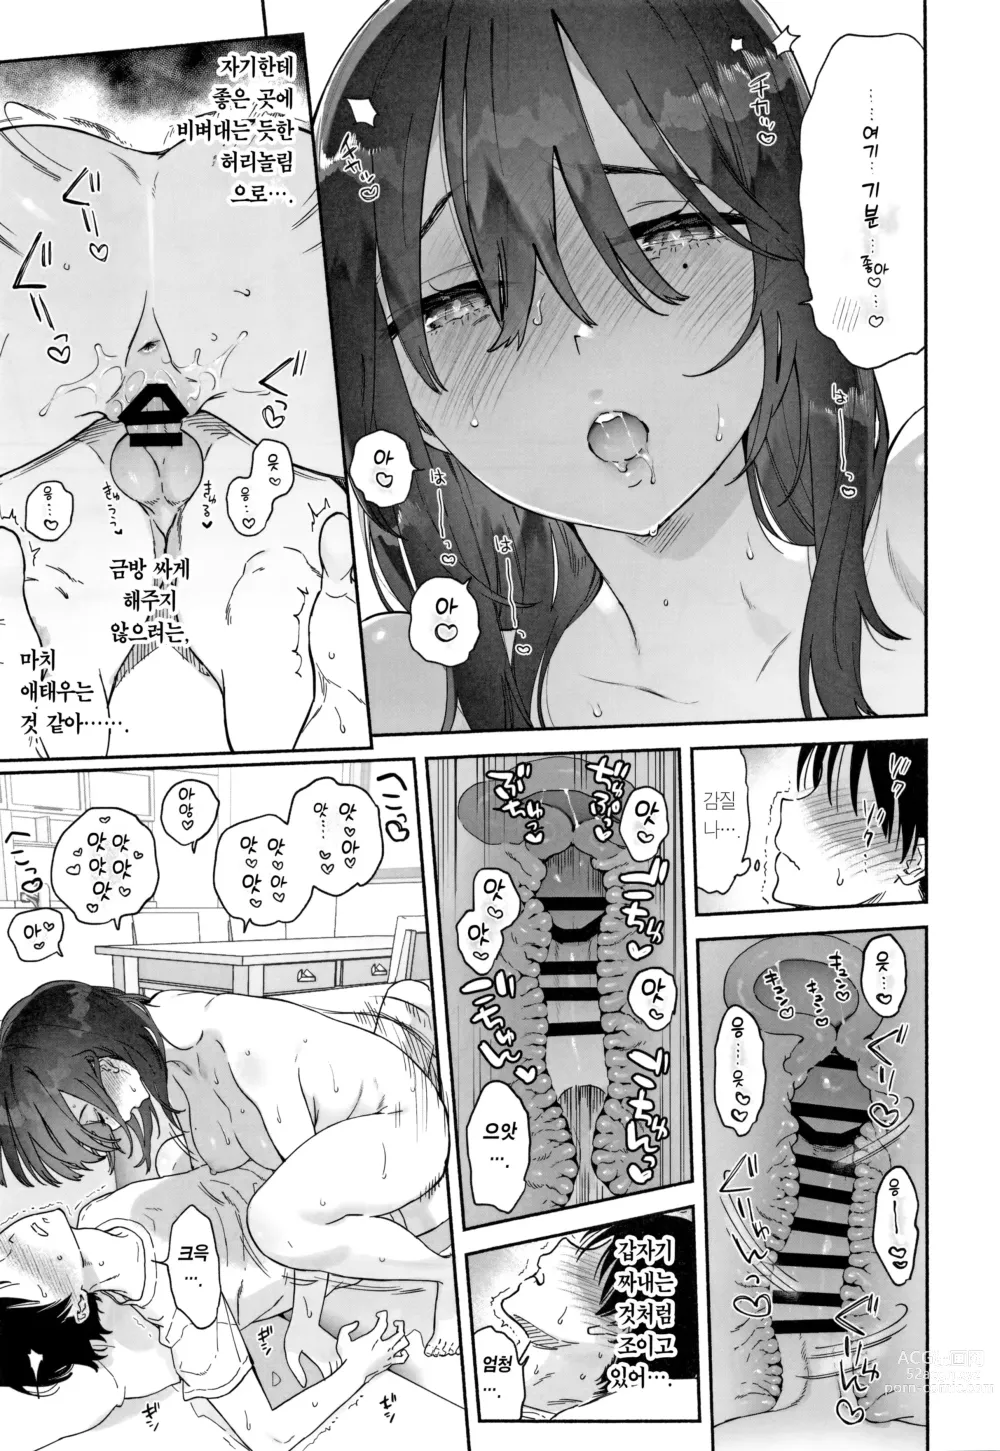 Page 60 of doujinshi 과묵한 도서위원과 섹스삼매경. 여름방학편~이틀간의 섹스삼매경~